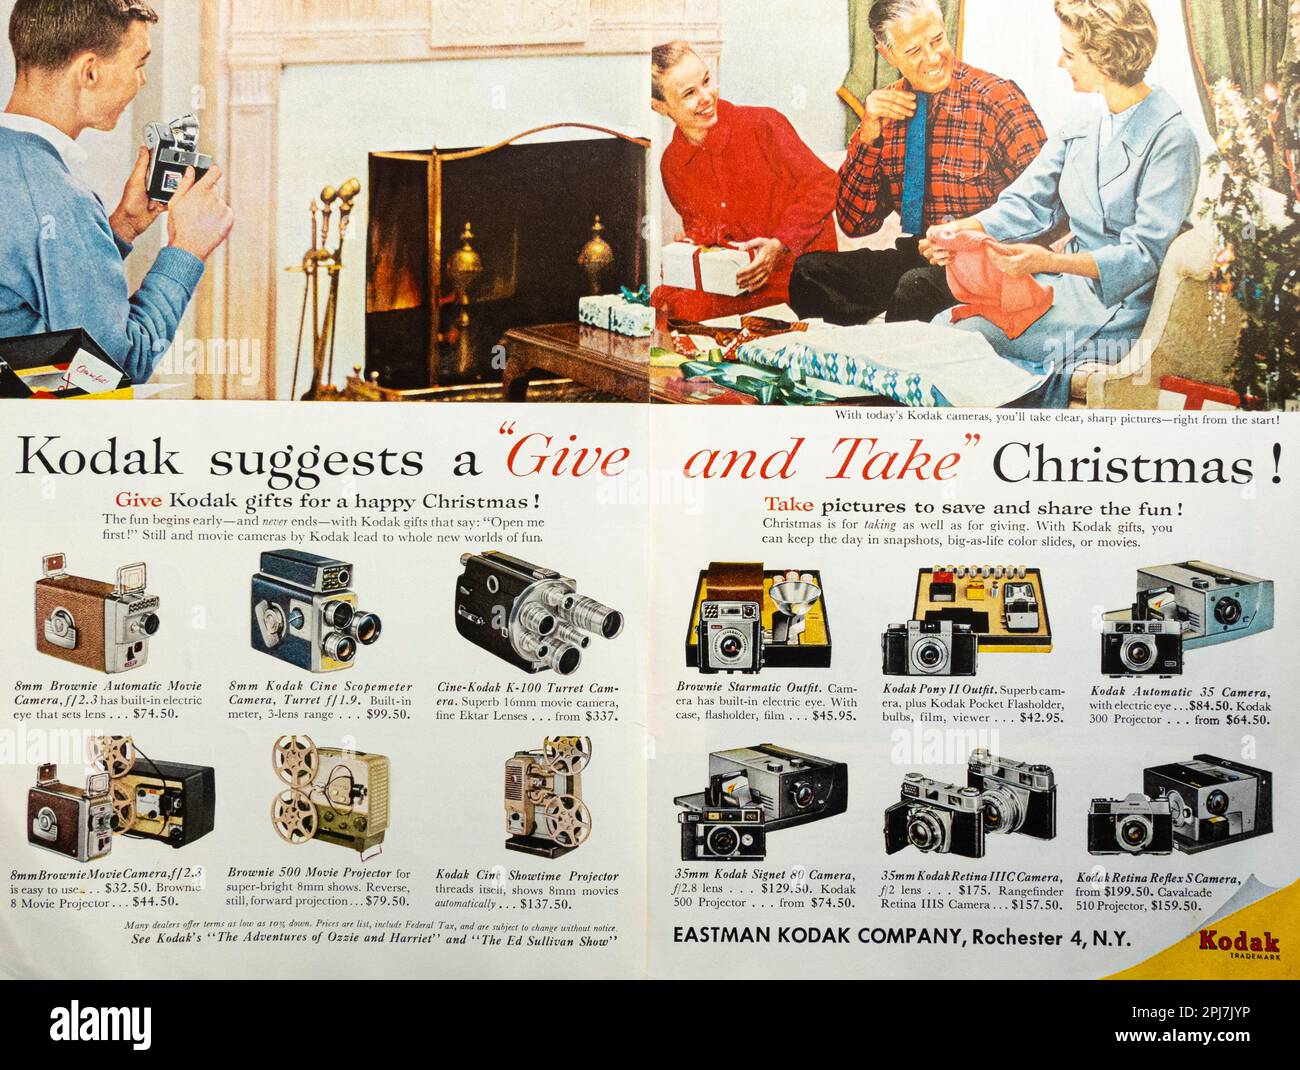 Kodak Geschenke zu weihnachten – Werbung für Kameras, Projektoren, Fotokameras in einer Zeitschrift in NatGeo, Dezember 1959 Stockfoto